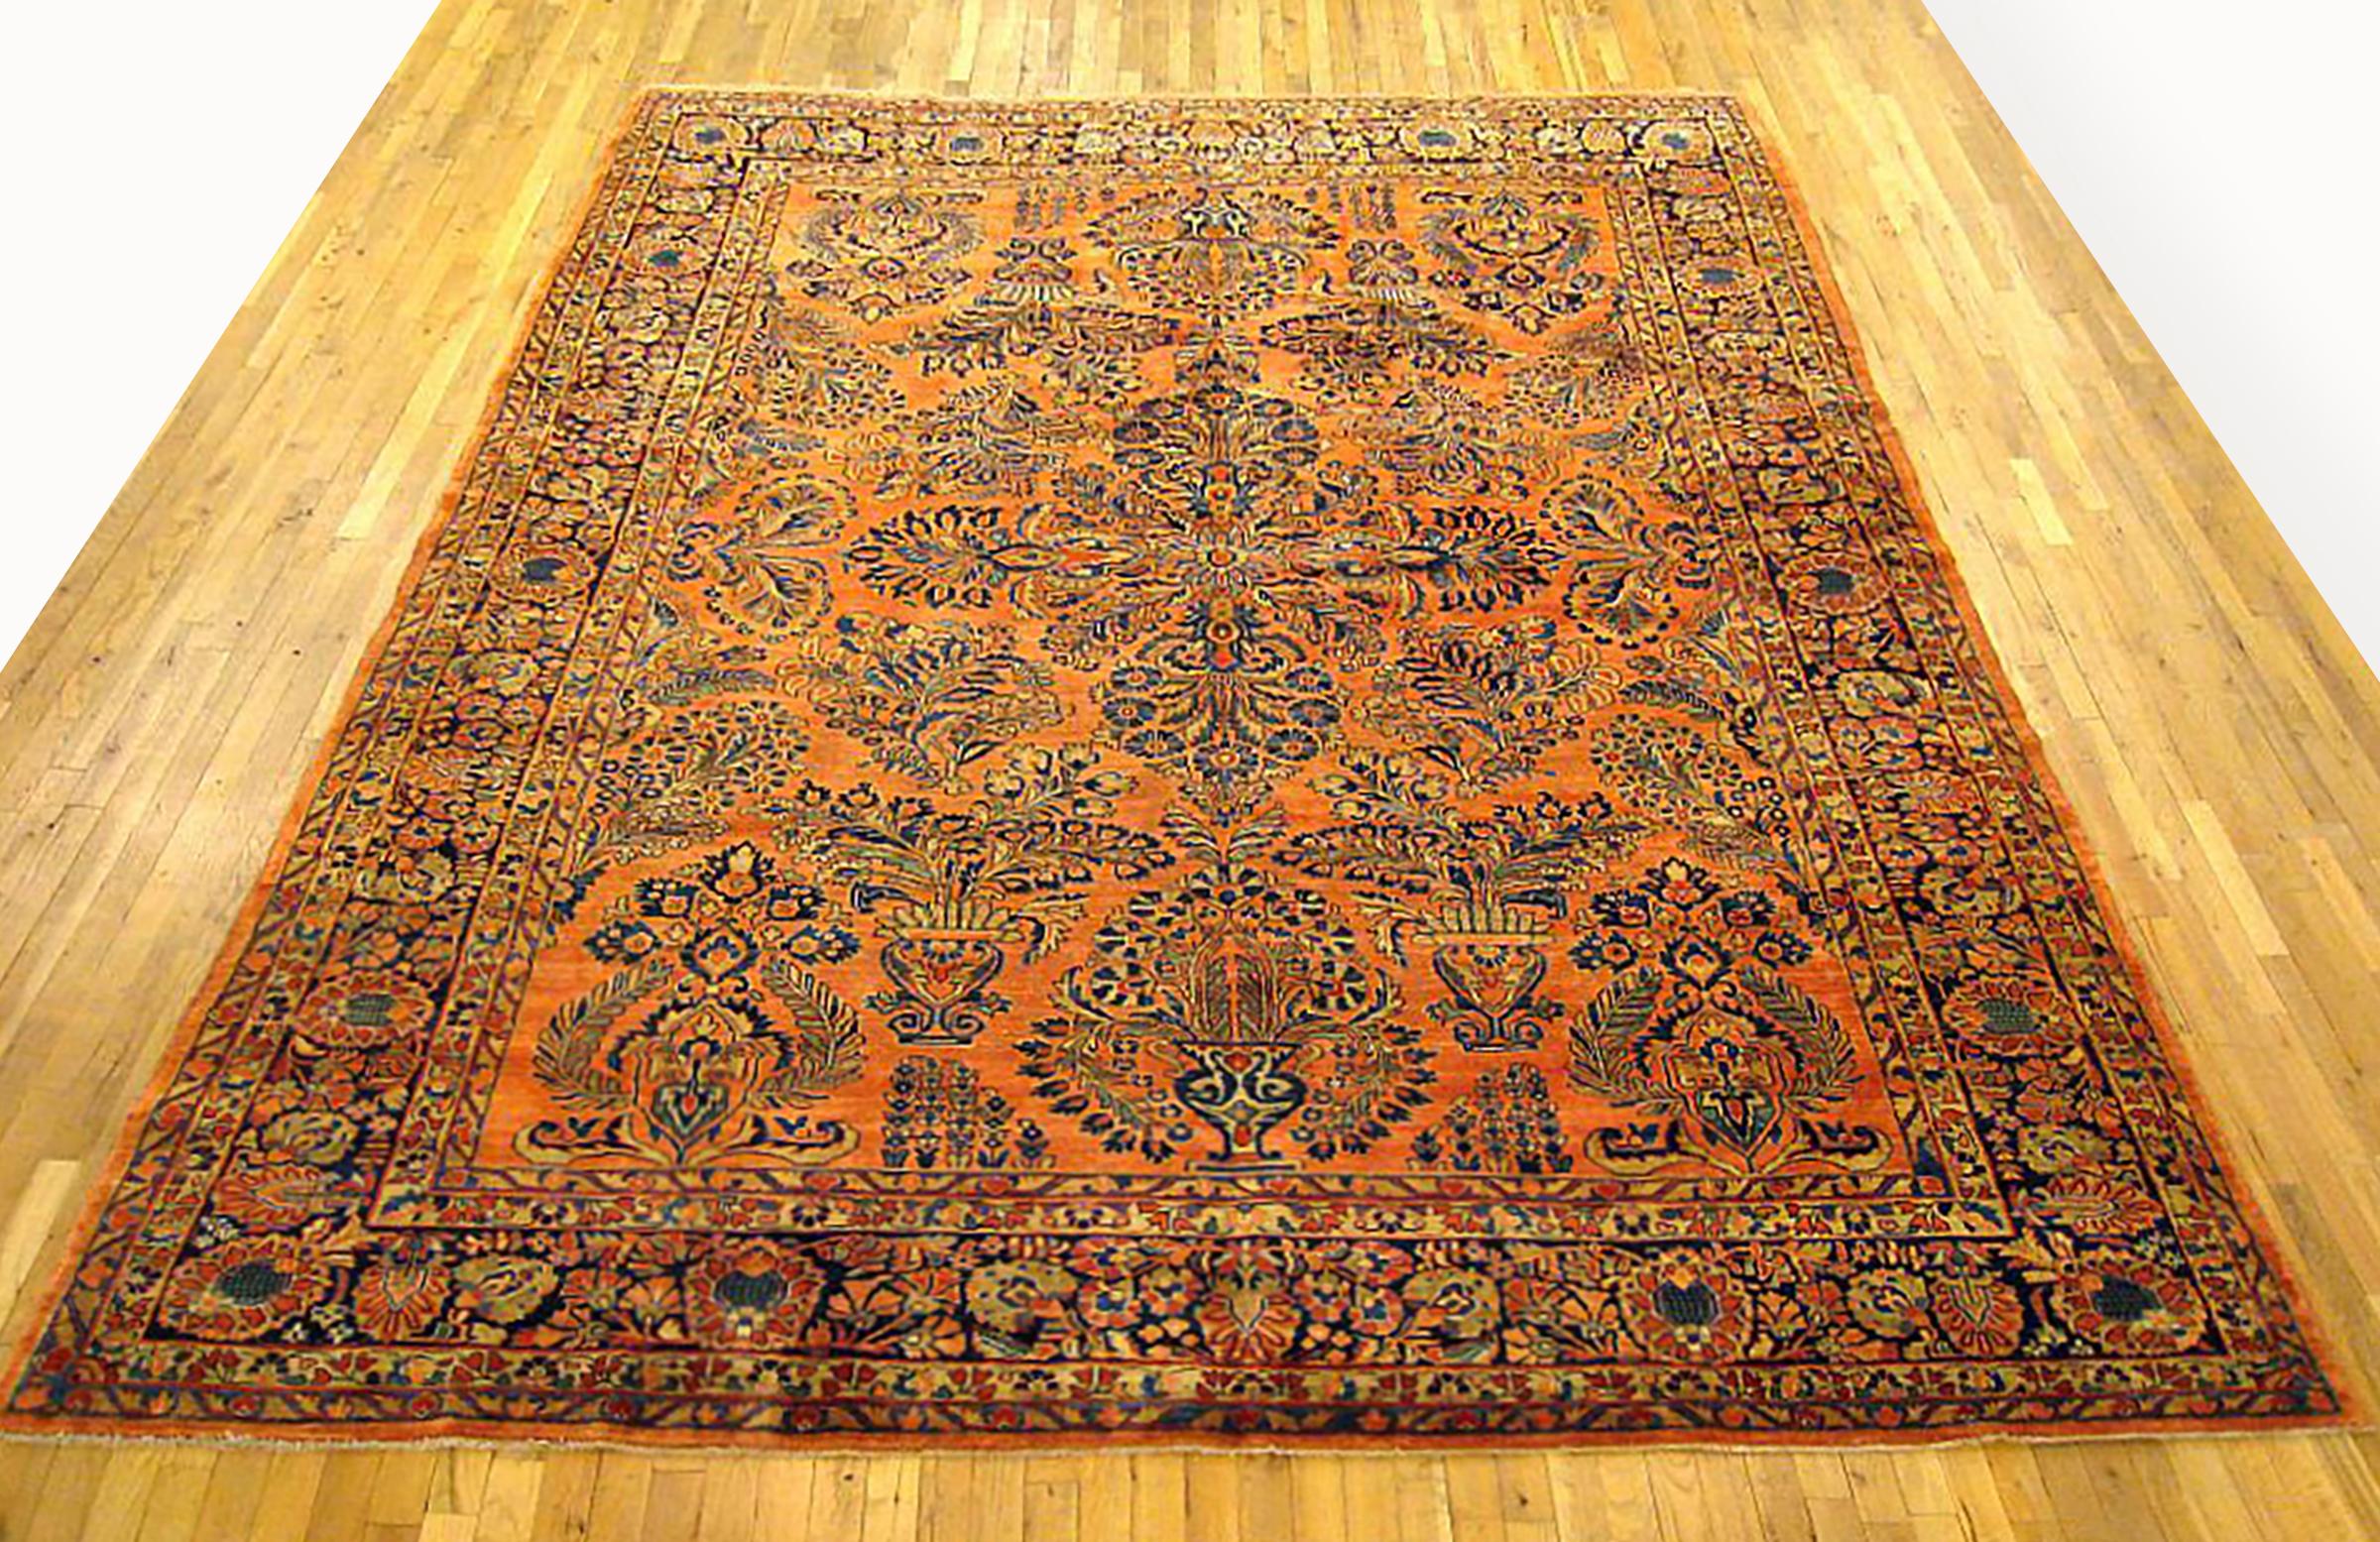 Antique Persian Sarouk Oriental Rug, circa 1920, Room size

An antique Persian Sarouk oriental rug, size 12'0